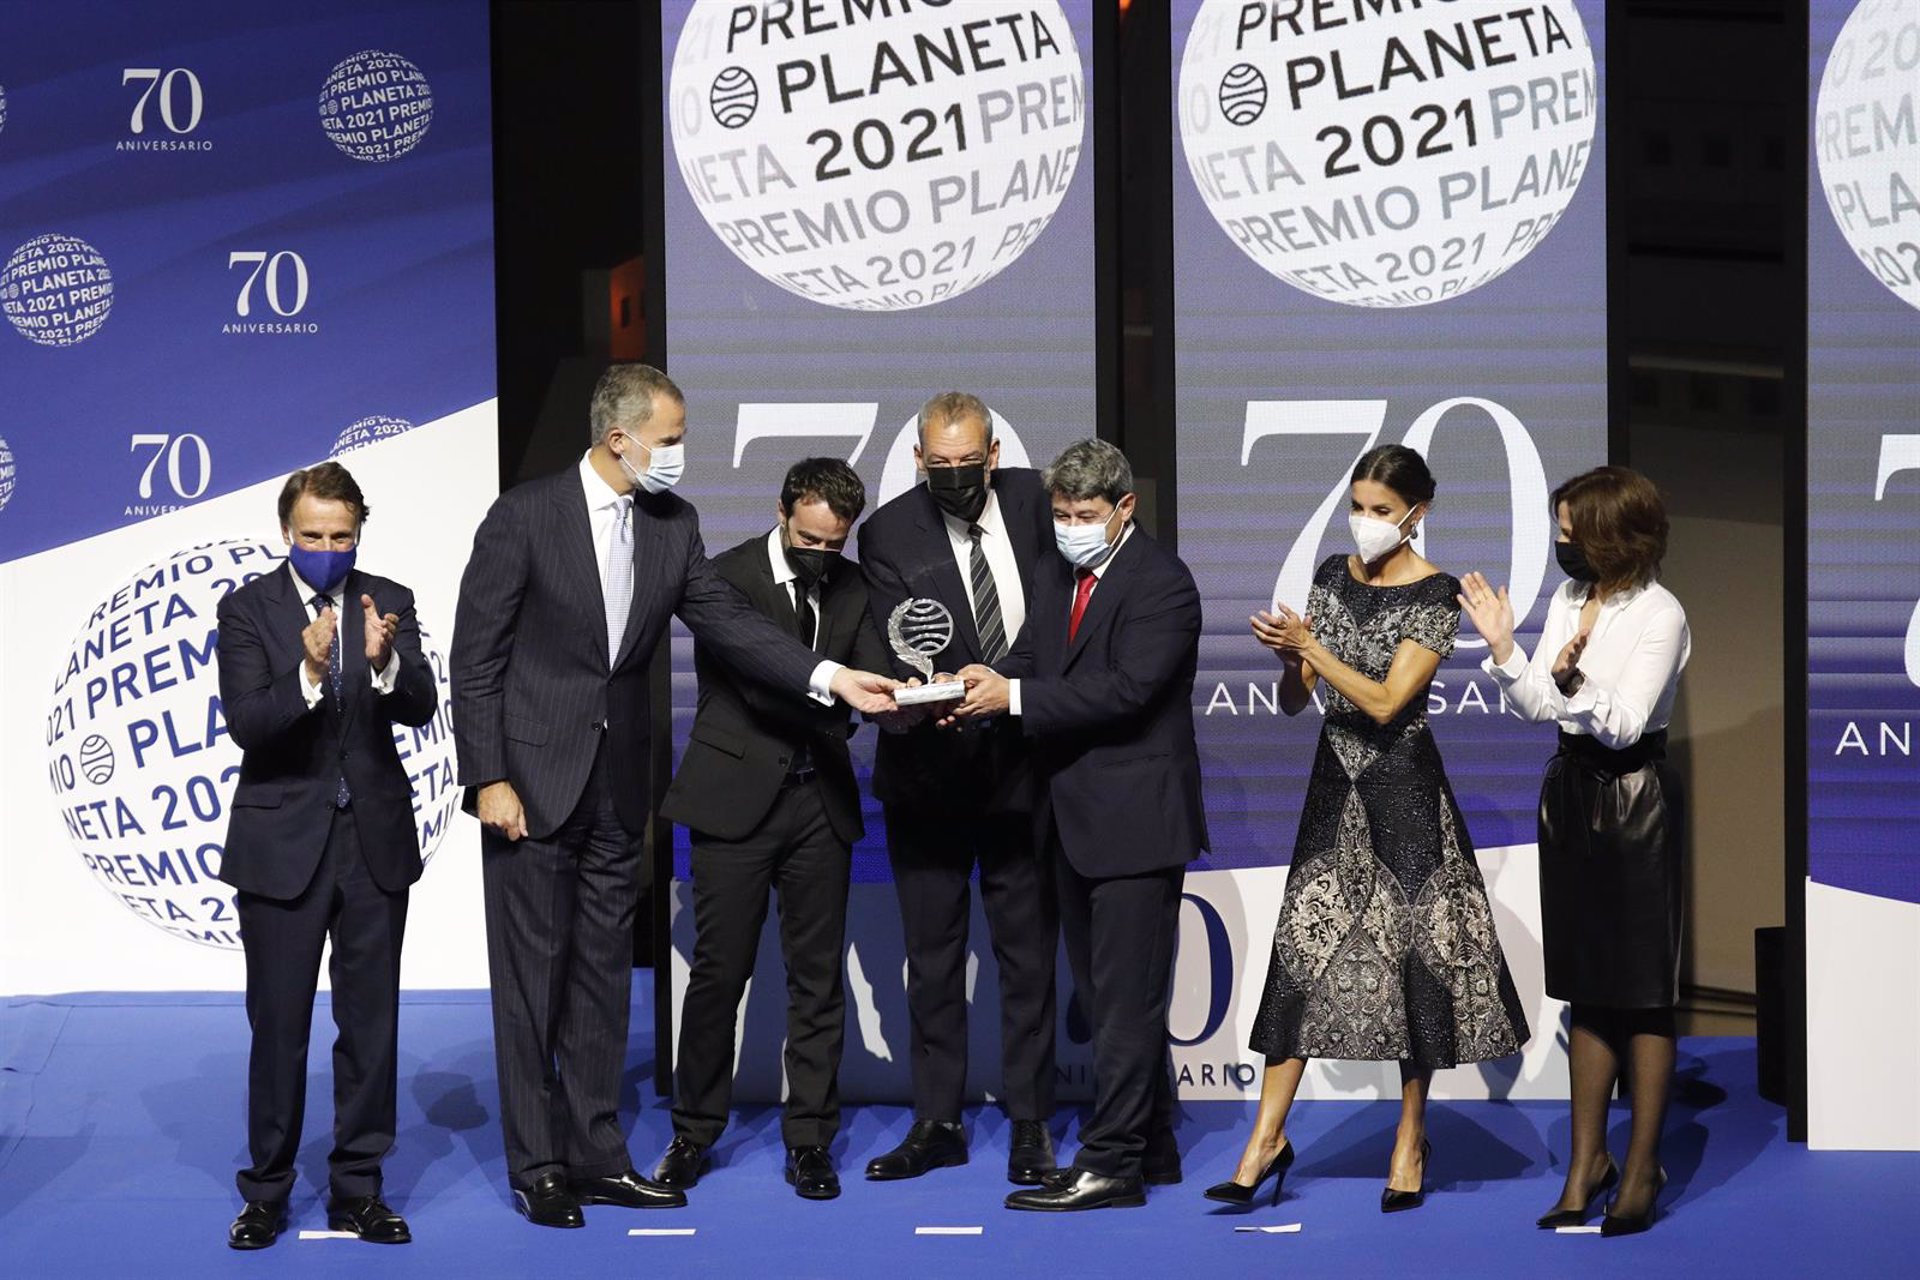 Carmen Mola, seudónimo de tres guionistas, gana el Premio Planeta del millón de euros